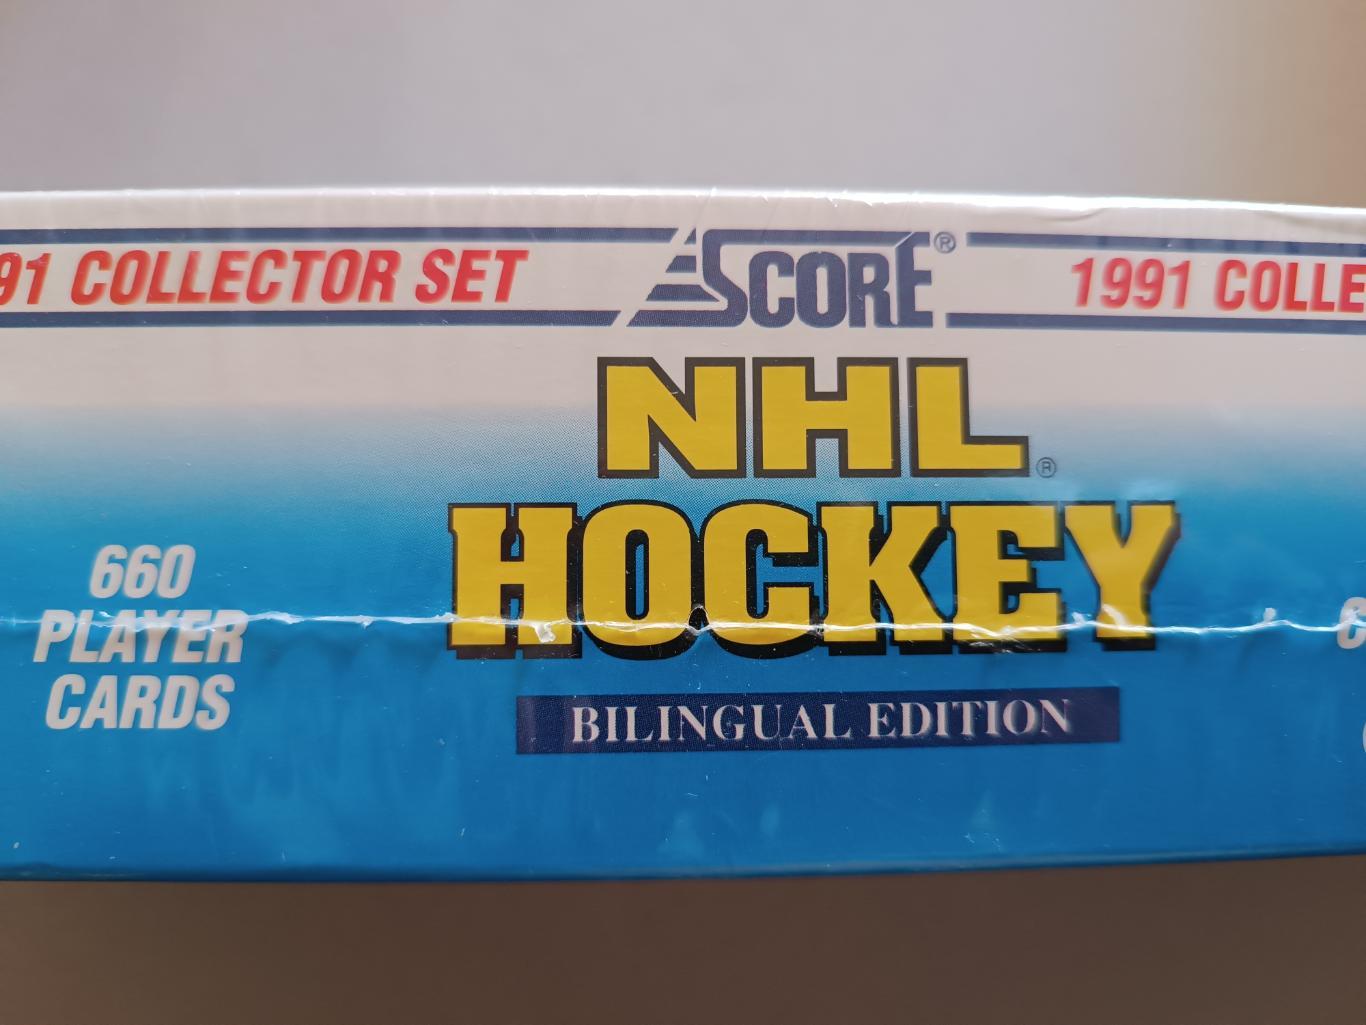 ХОККЕЙ НАБОР КАРТОЧЕК НХЛ 1991-92 SCORE OFFICIAL HOCKEY CARD SET #1-660 4